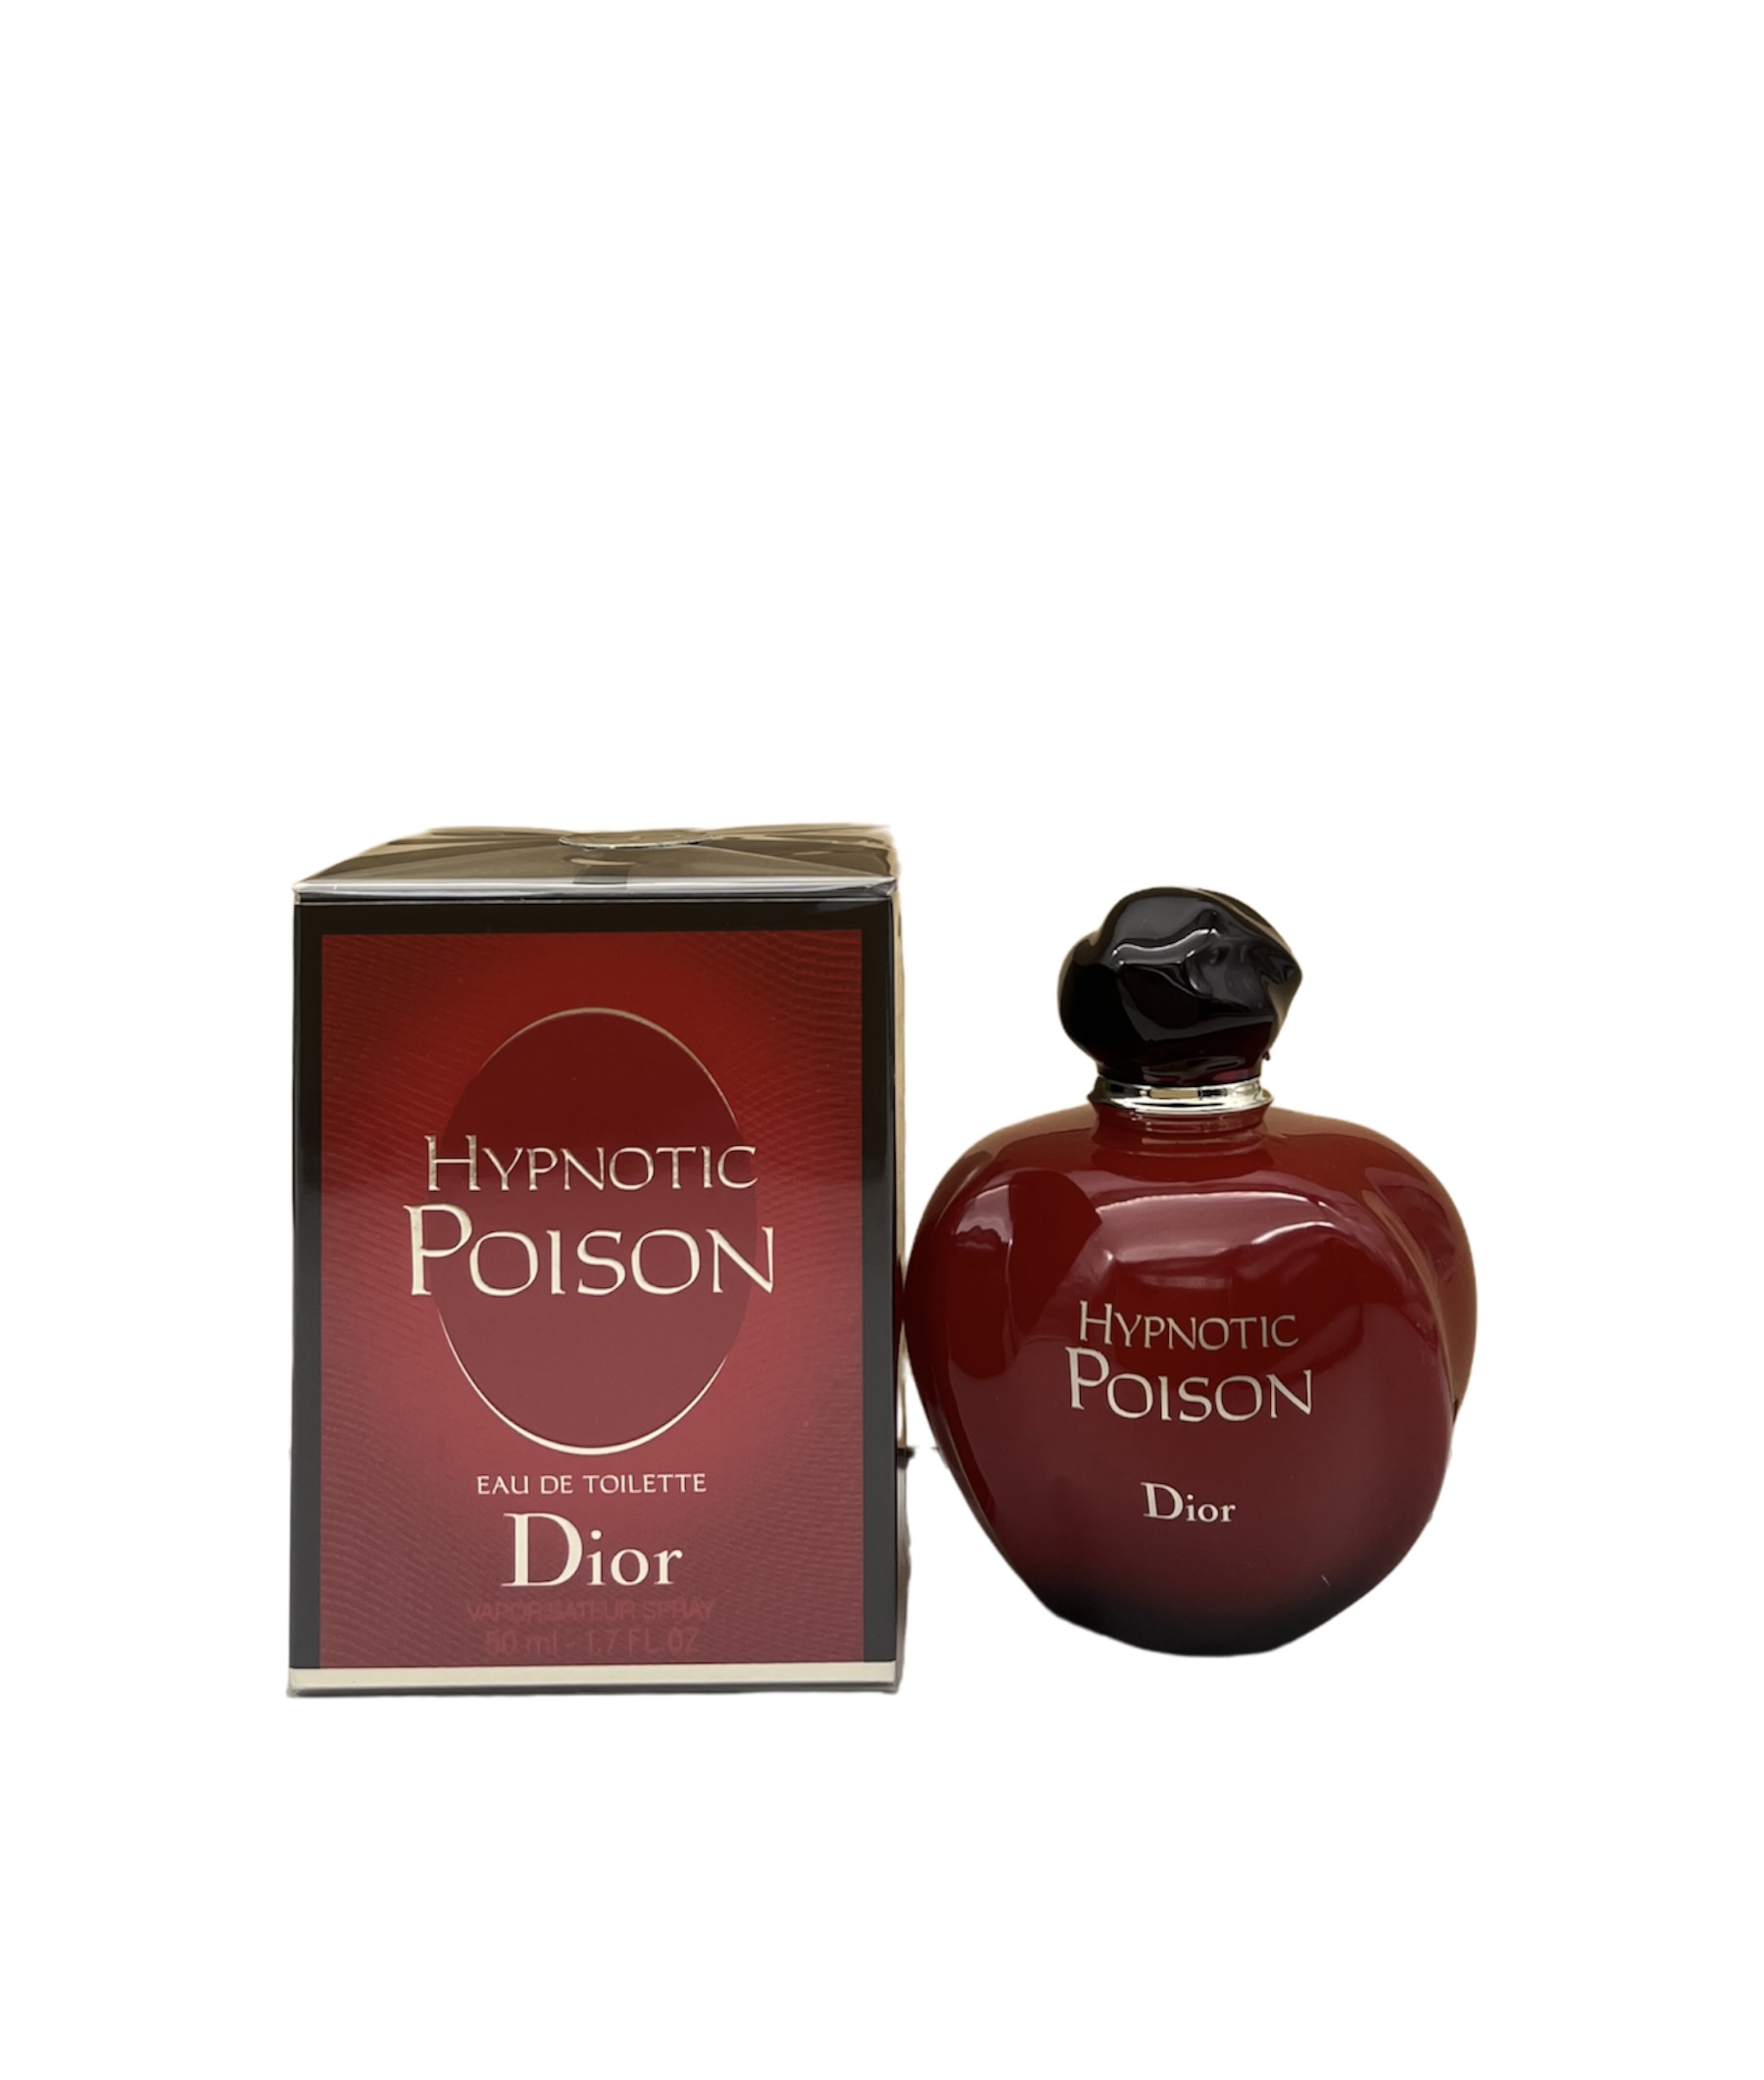 Dior - Hypnotic Poison Eau de Toilette 30ml